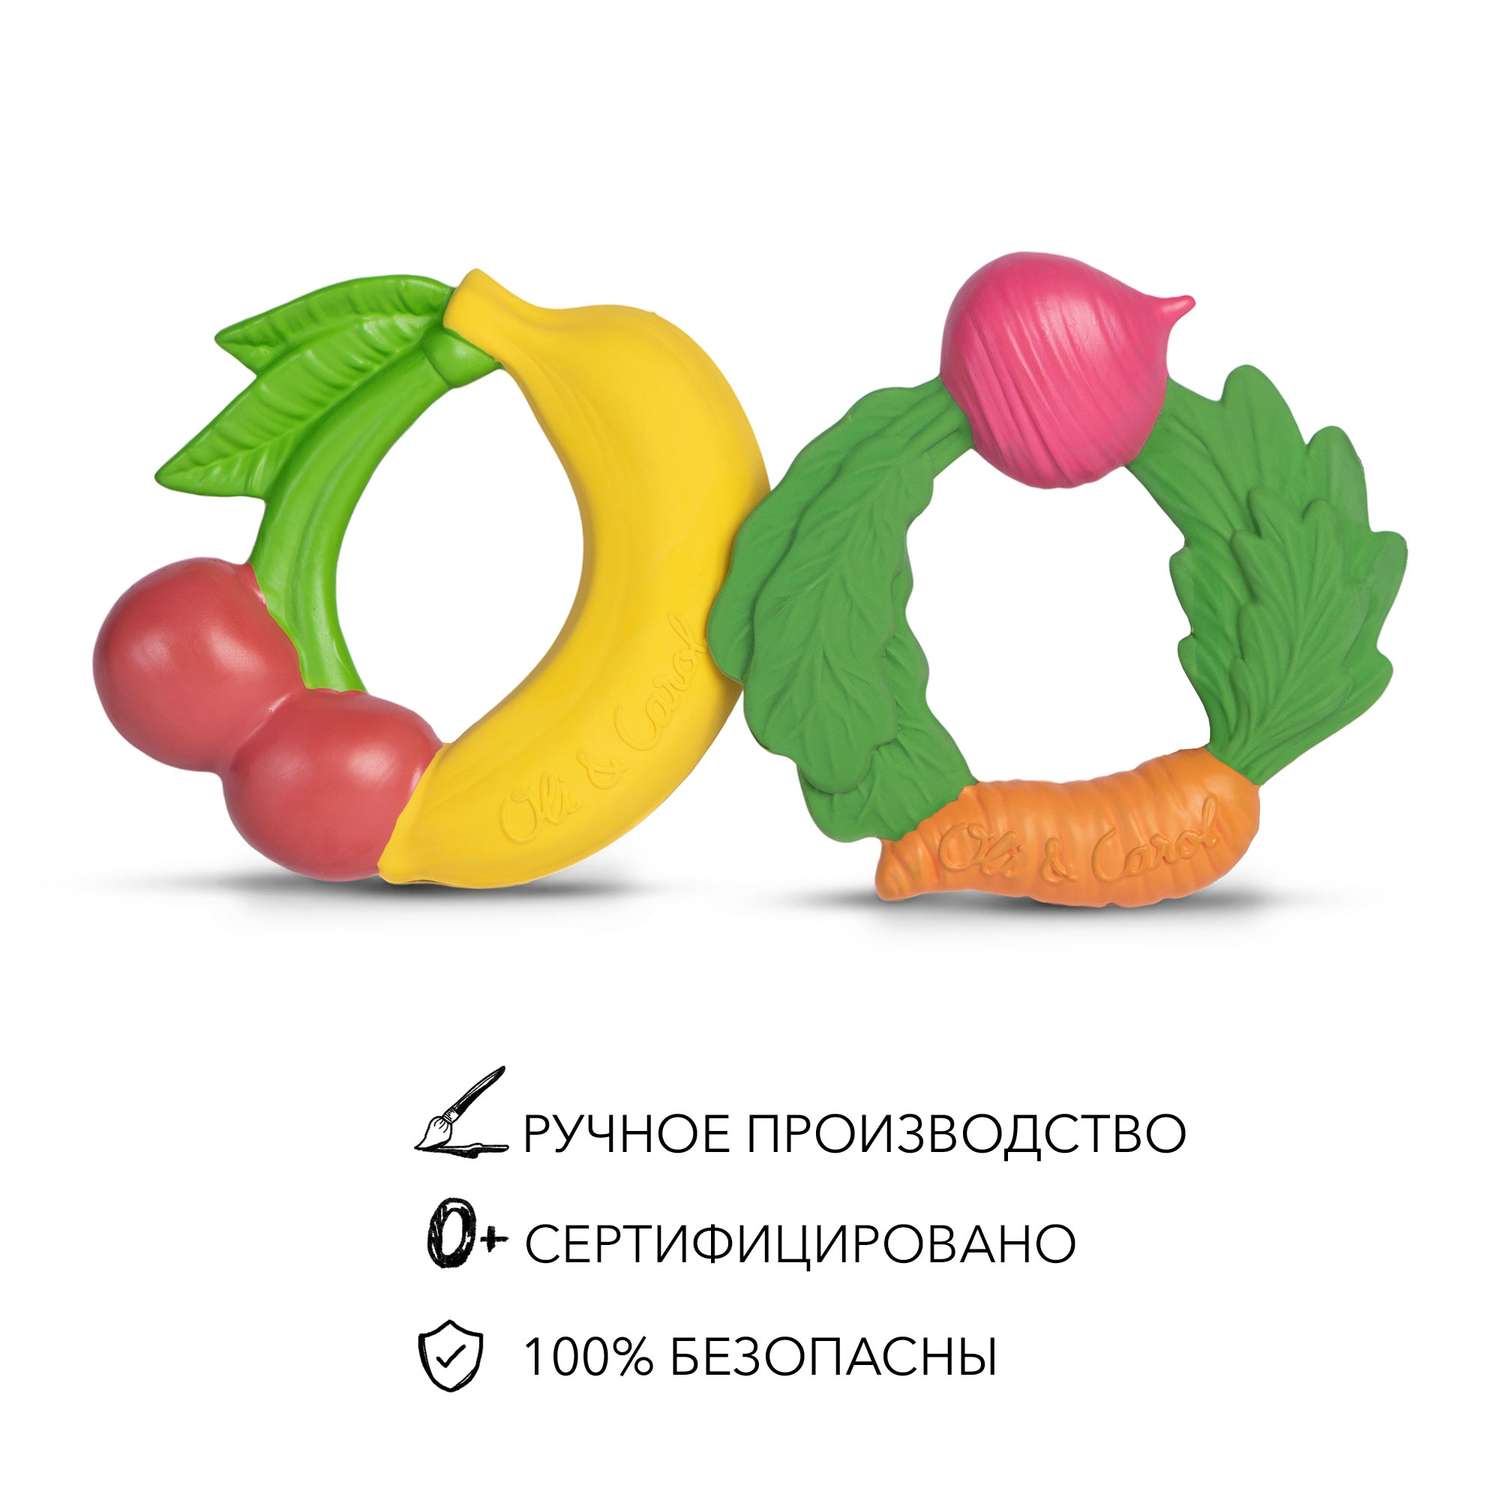 Игрушка-прорезыватель OLI and CAROL Fruit Teething Ring из натурального каучука - фото 4